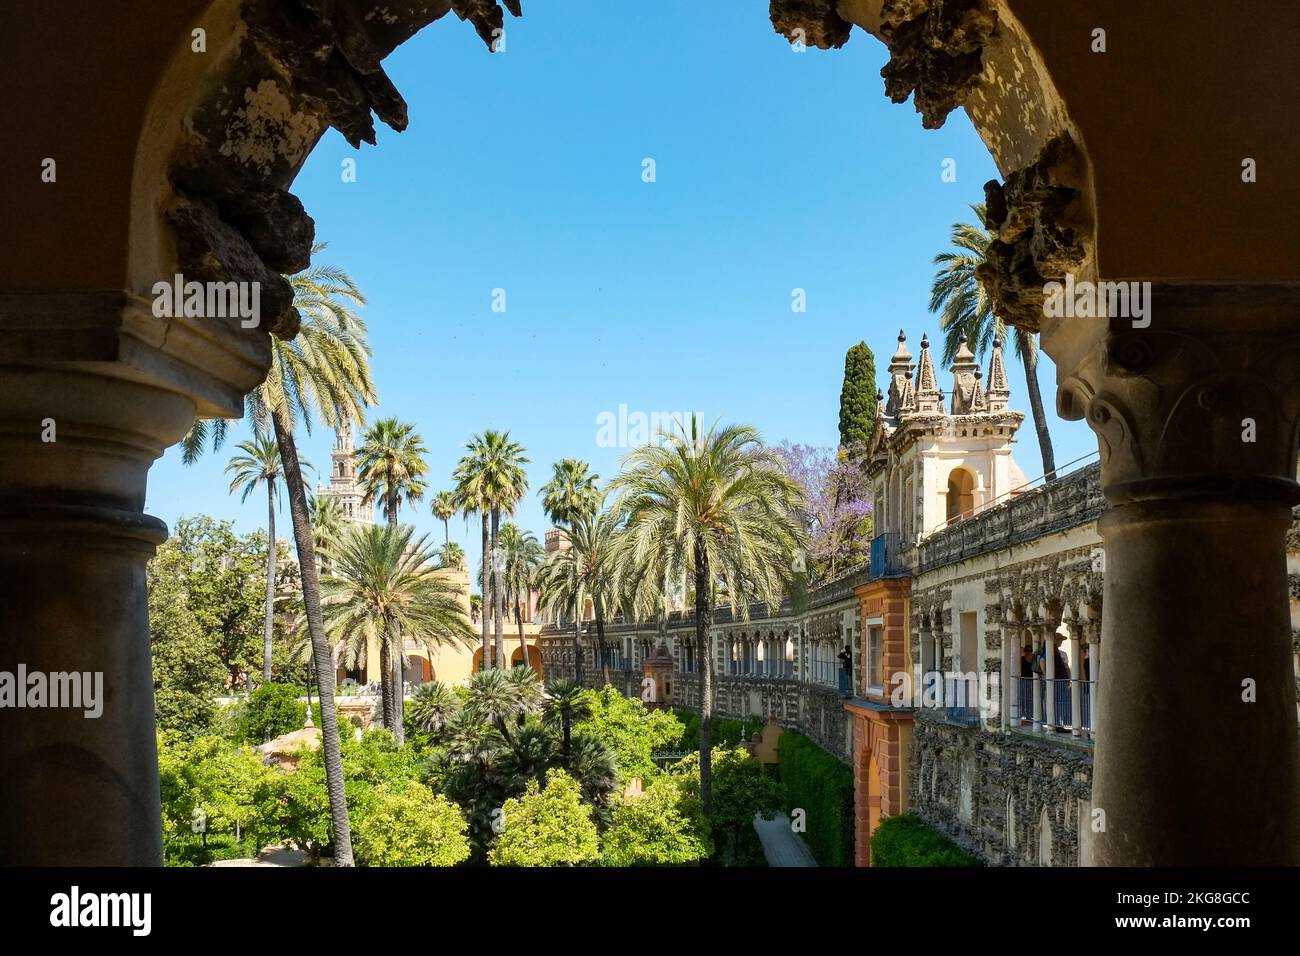 Spagna, Siviglia, giardini formali al palazzo reale di Alcazar Foto Stock